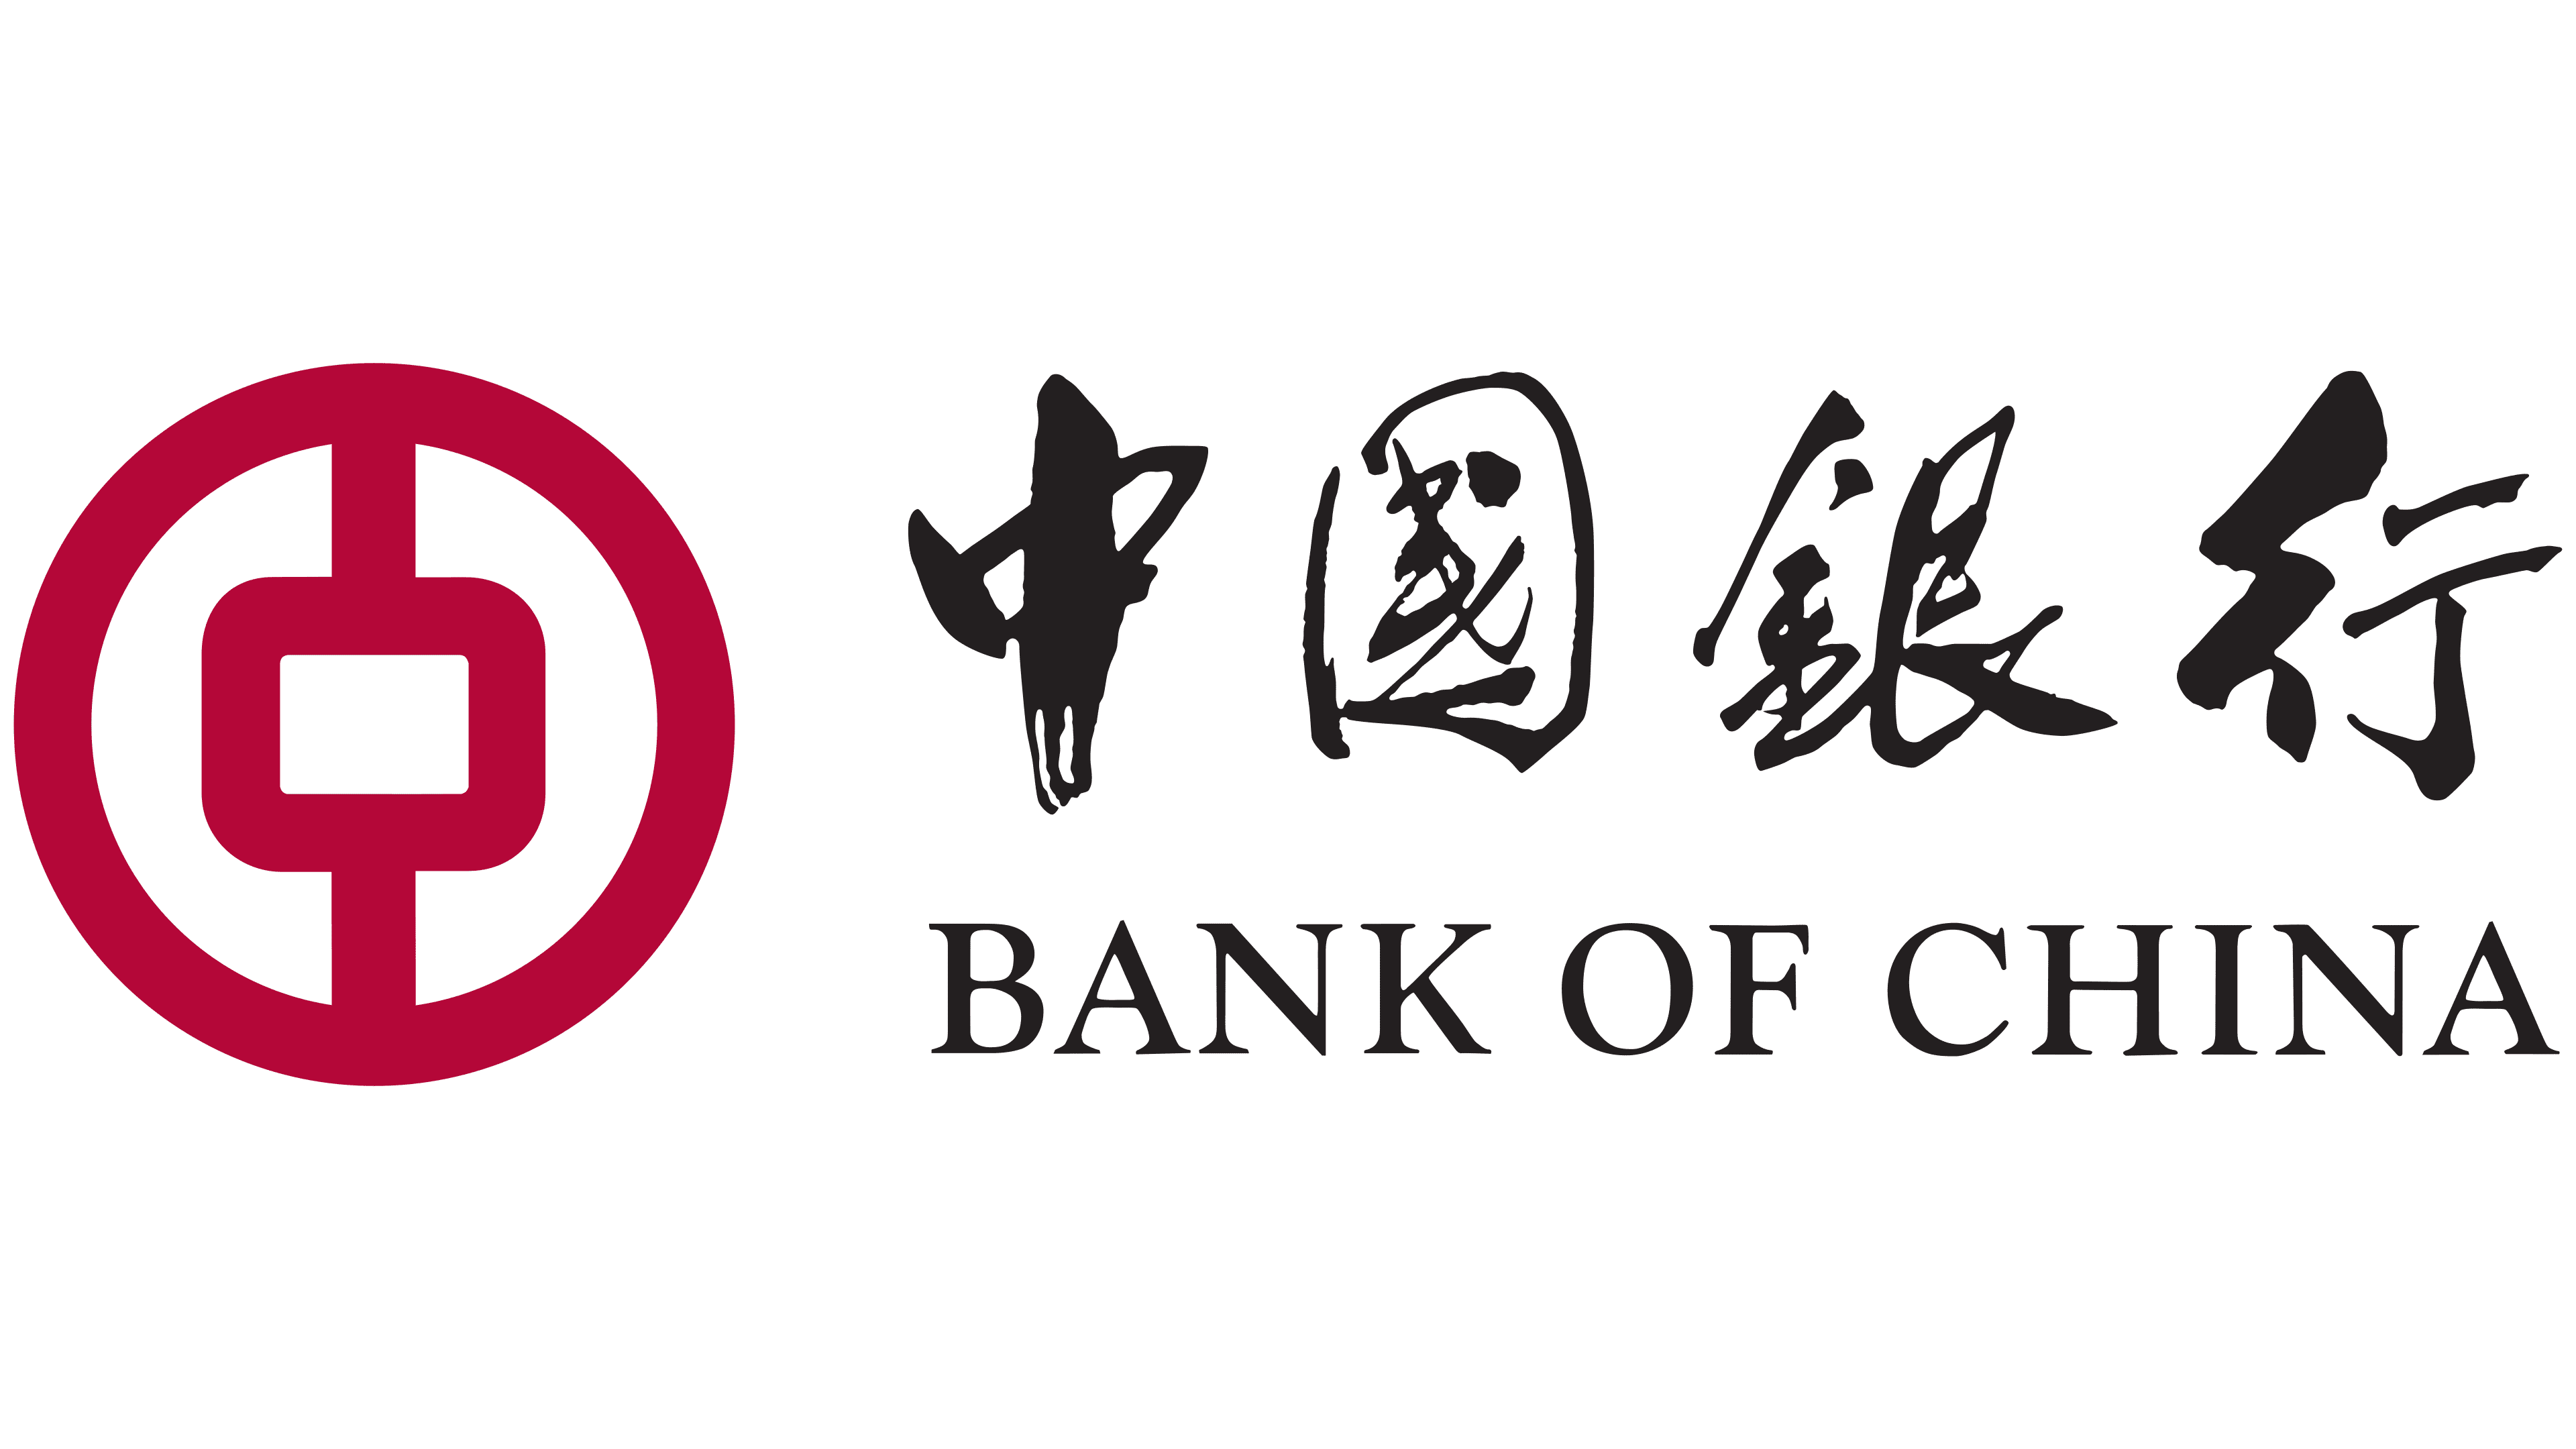 Cnaps bank of china. Банк Китая. Банк Китая (boc). Китайские логотипы. Банк Китая в Москве.